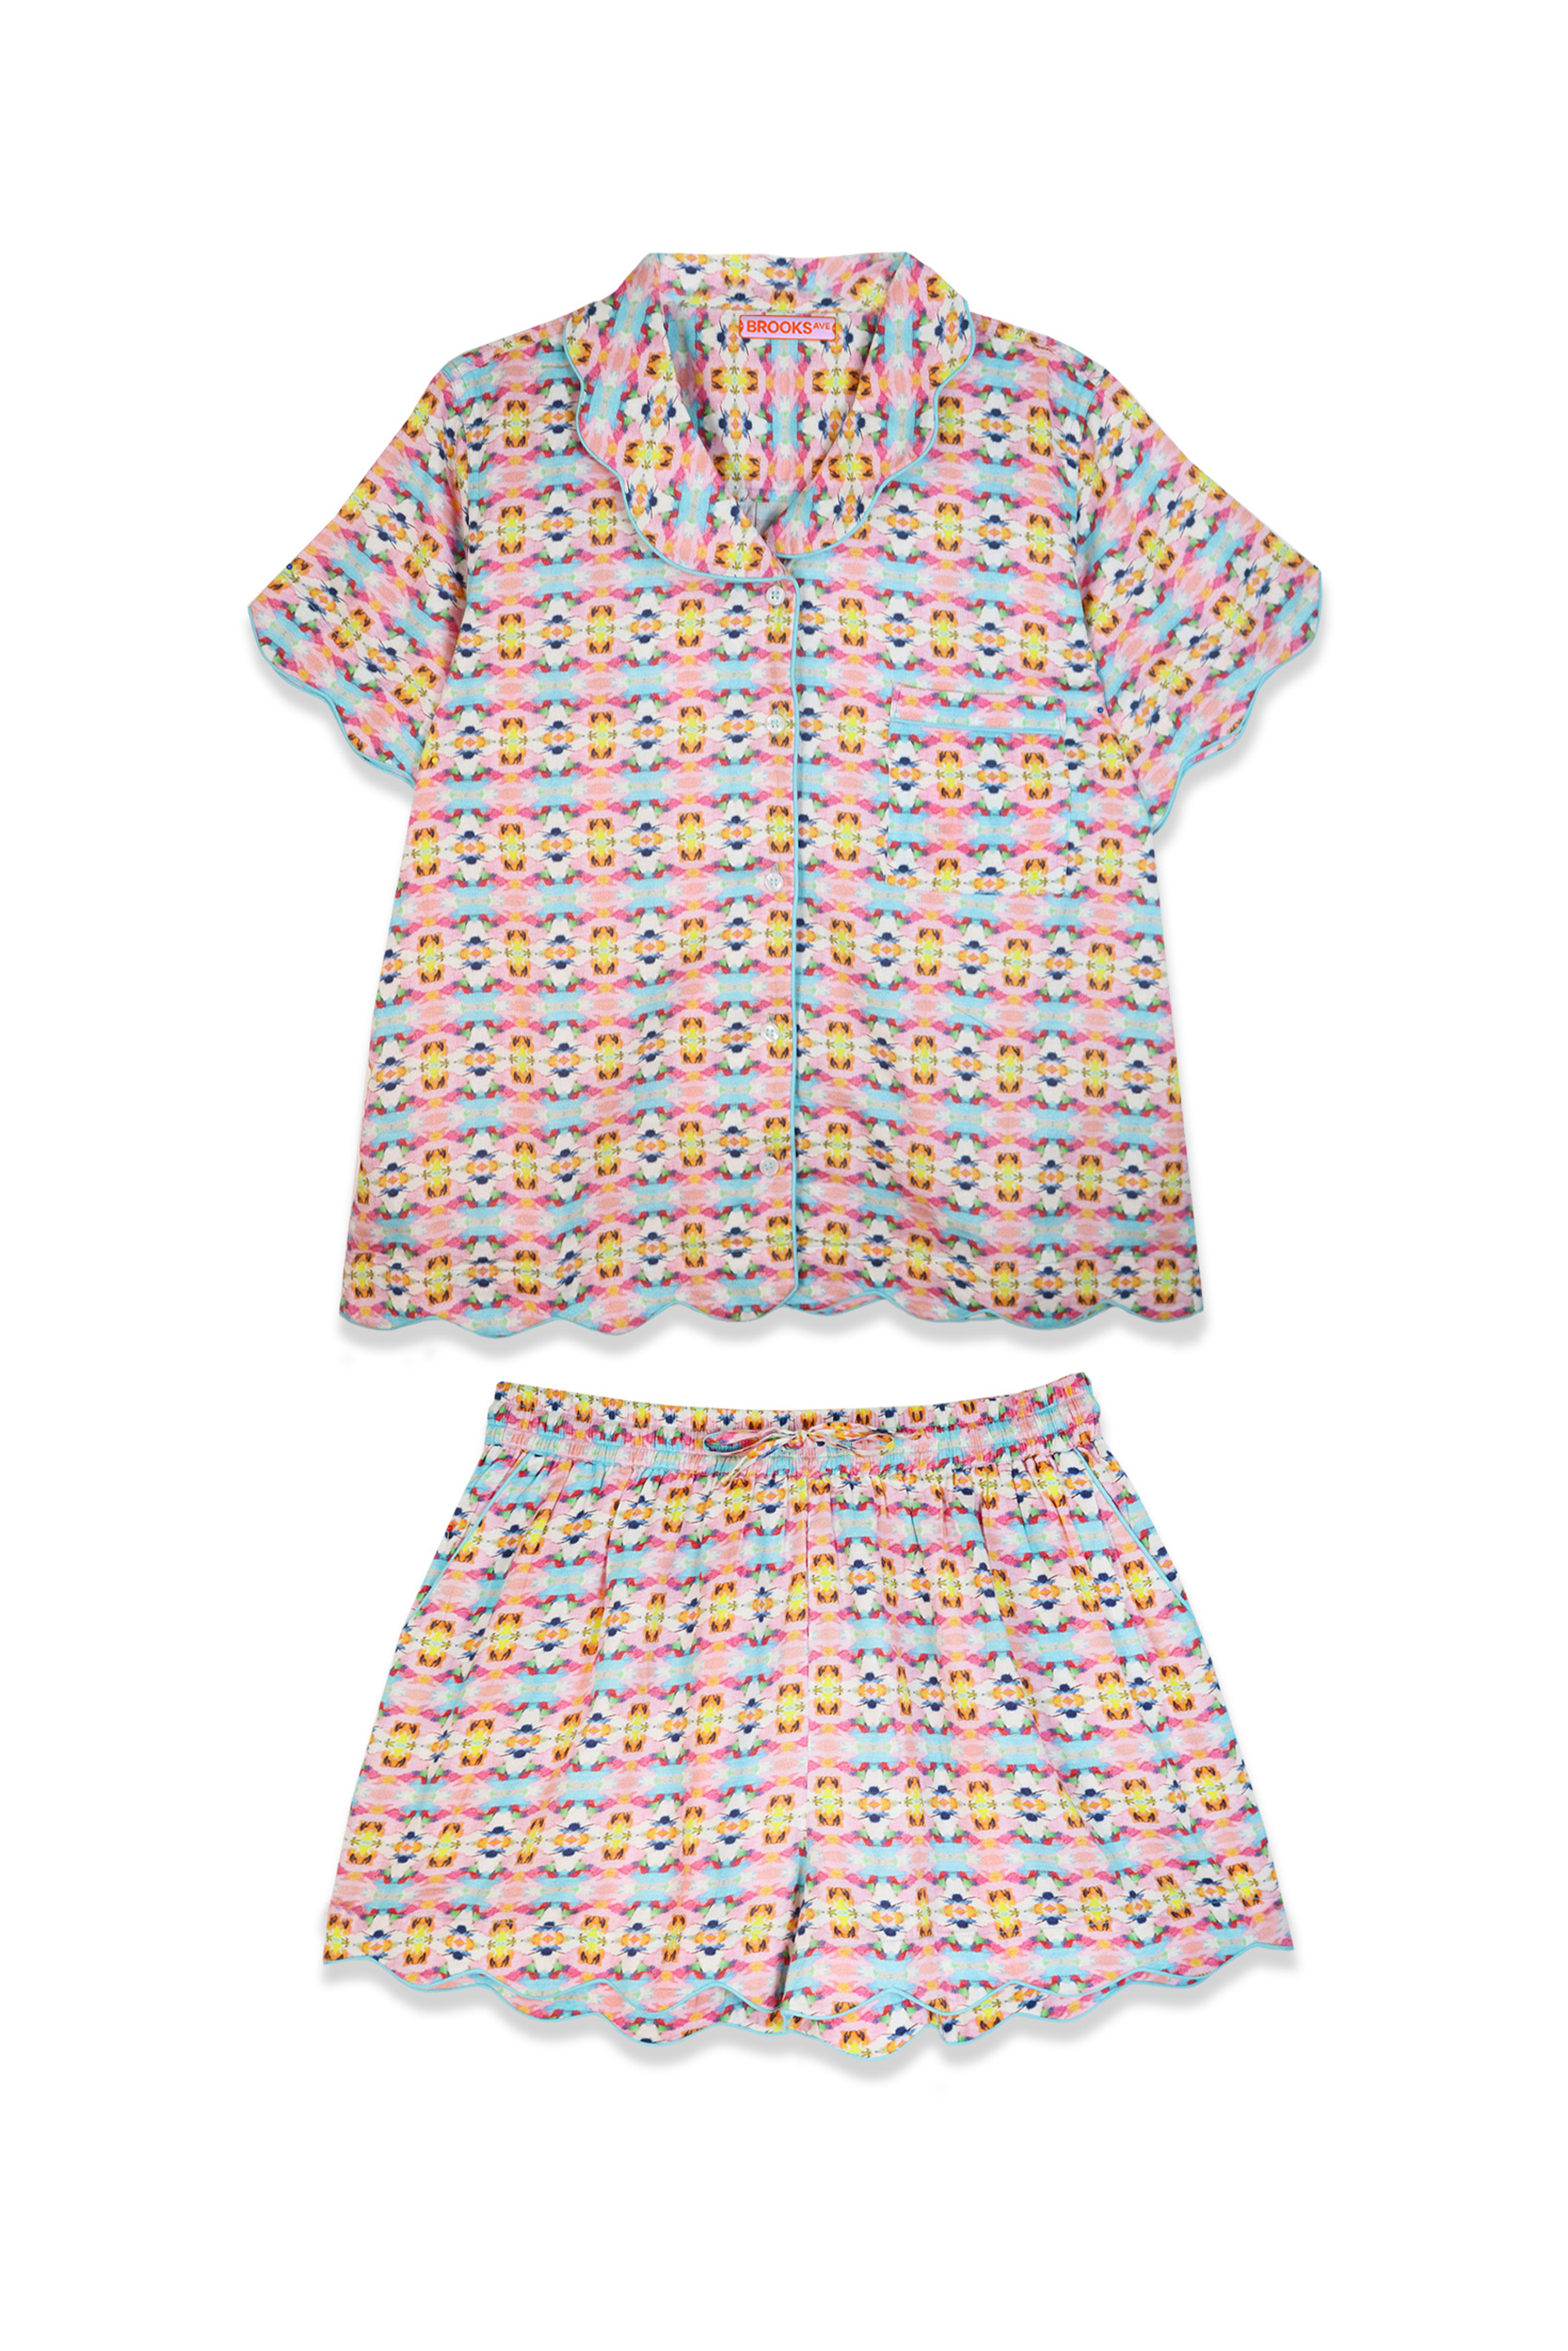 Scalloped Pajama Set Short - Sumner Pink